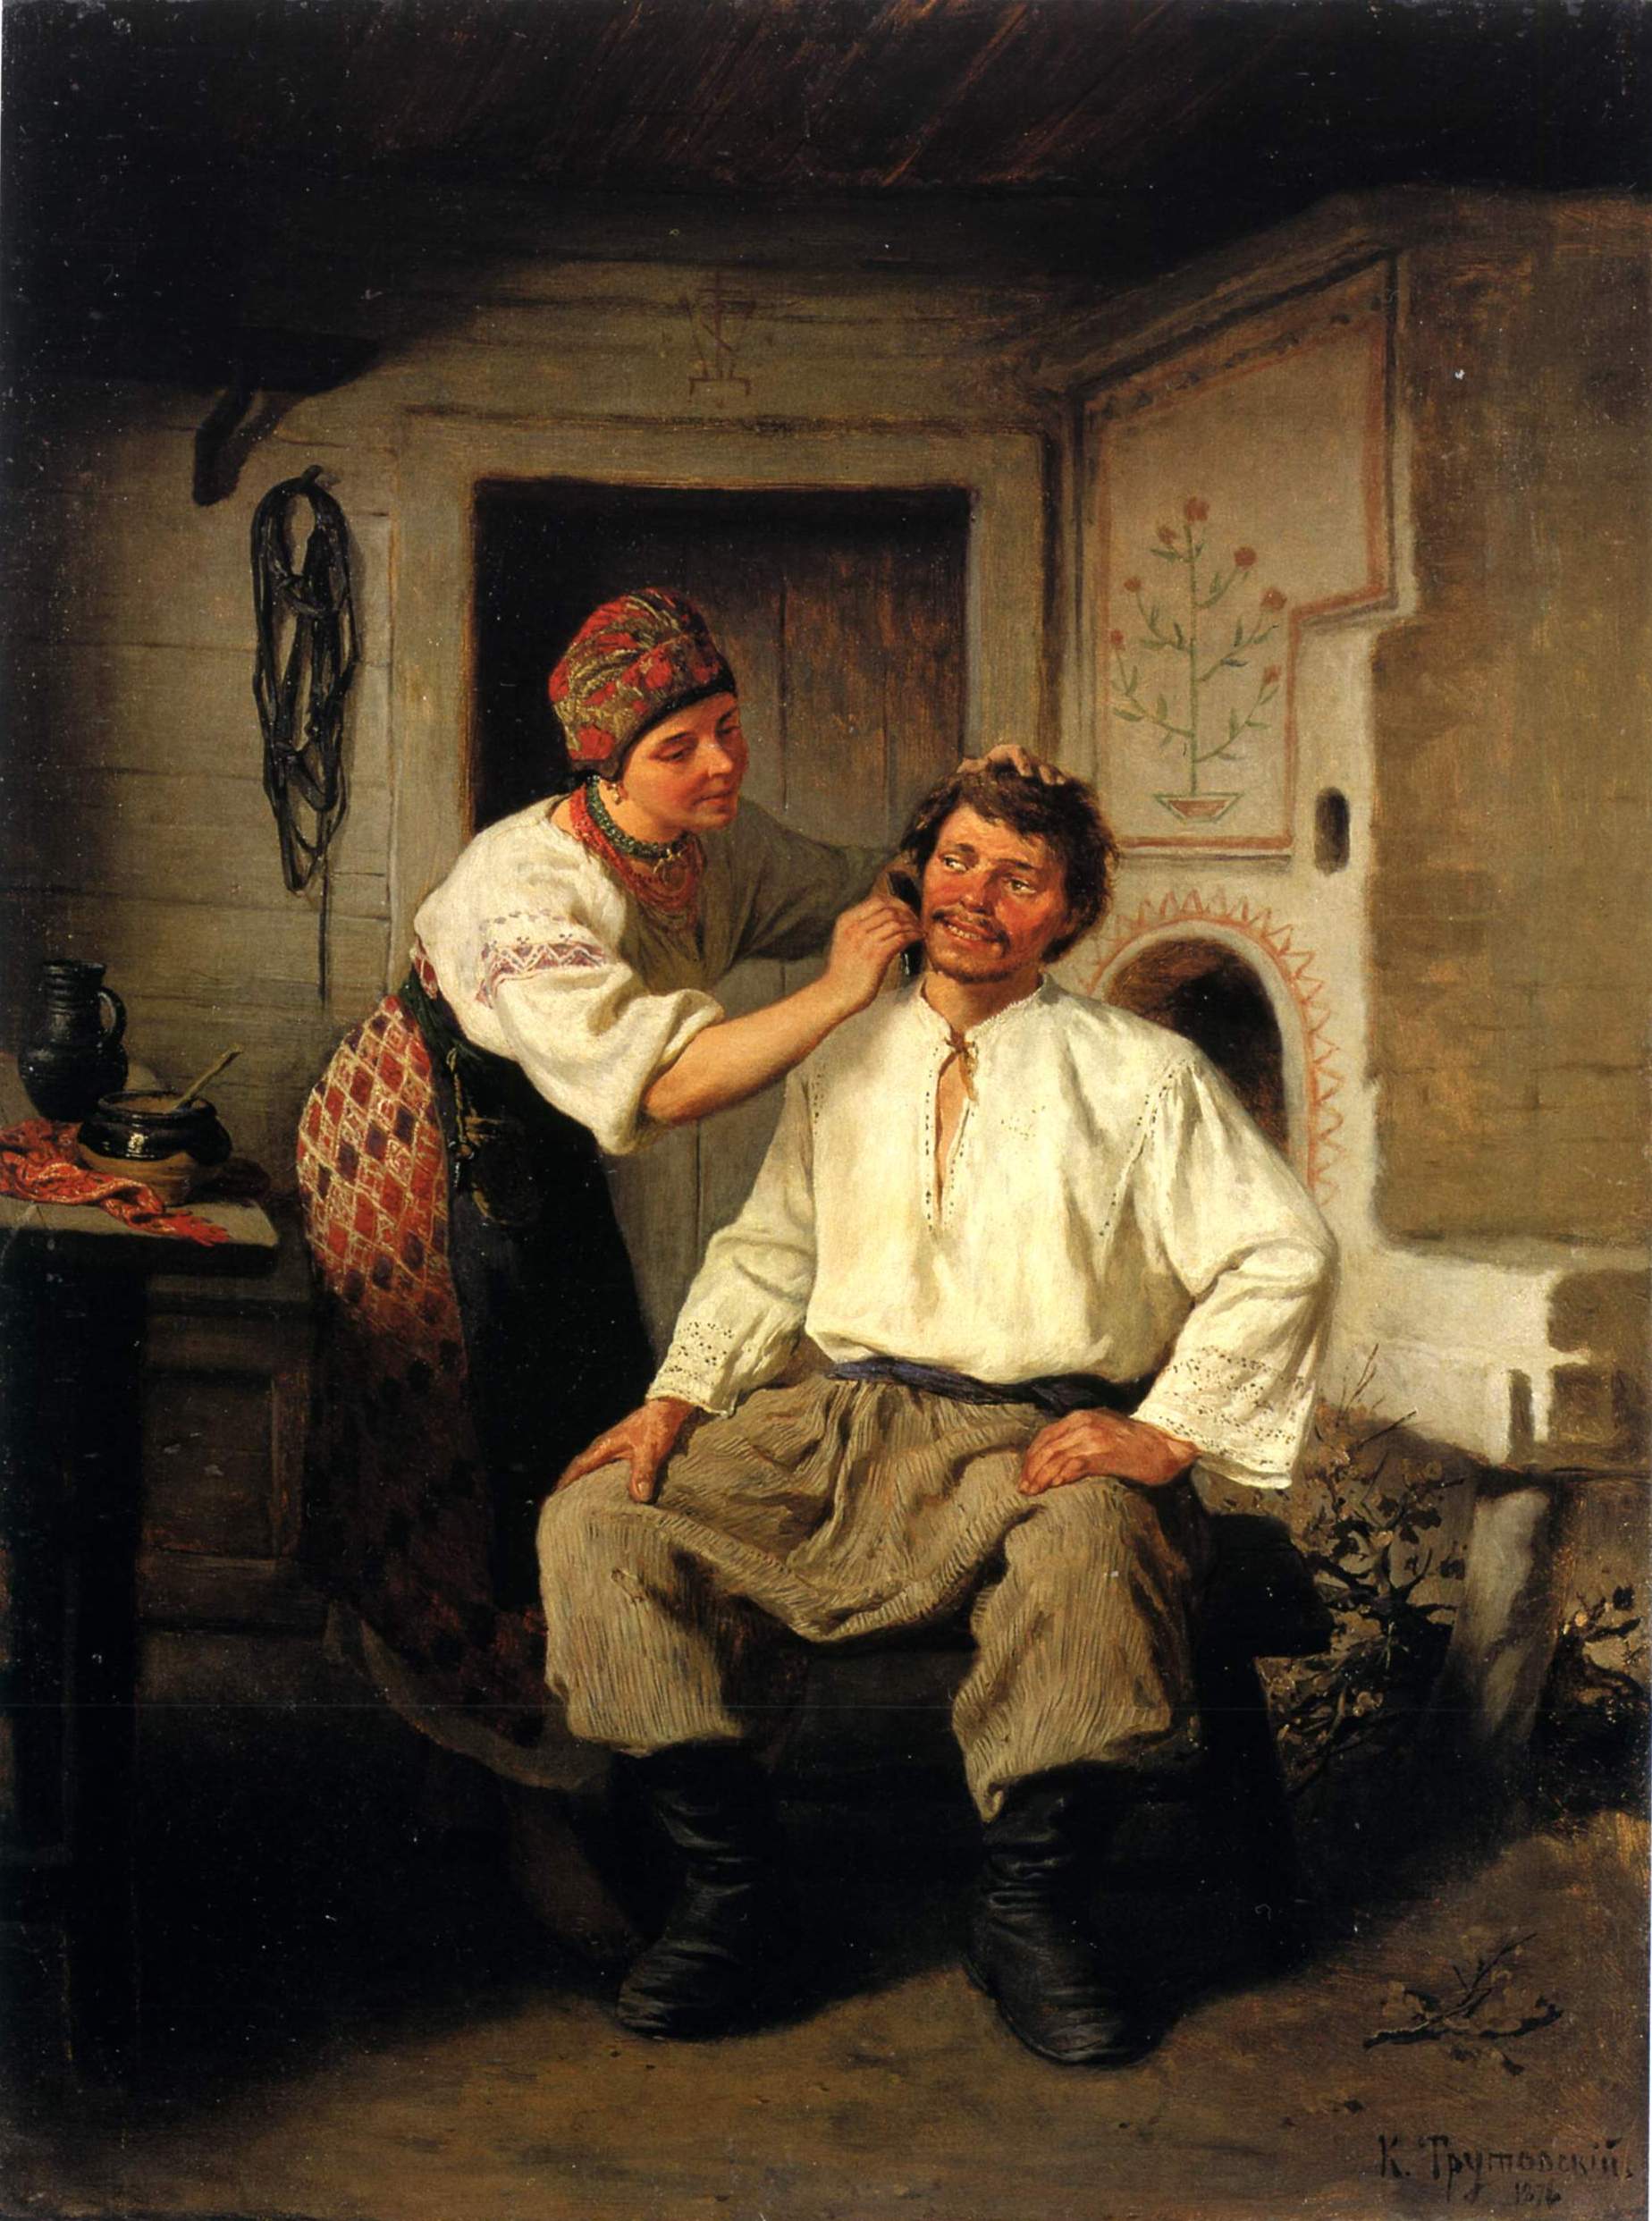 Трутовский. Жанровая сцена. 1875